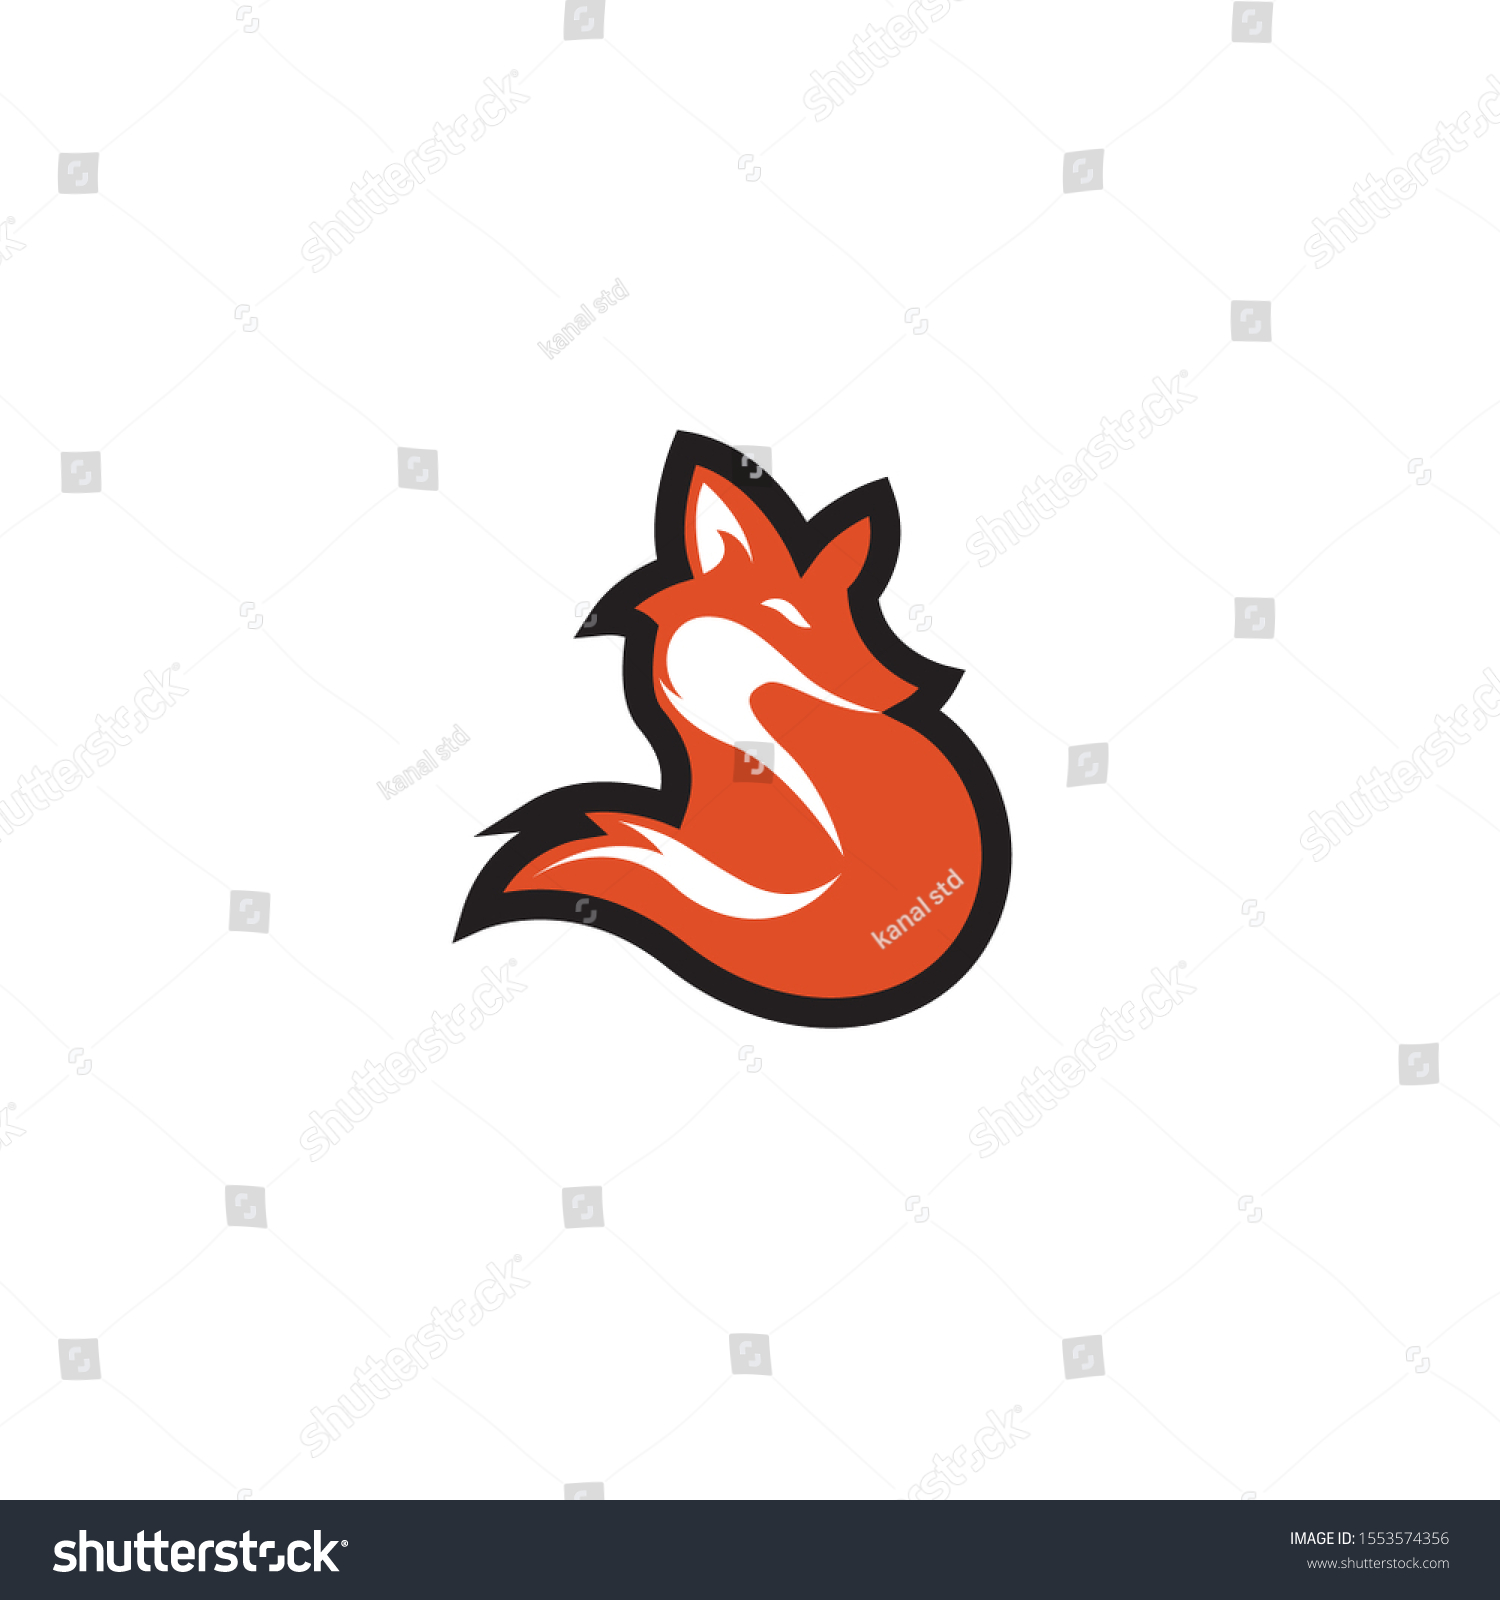 SVG of 
Naruto fox symbols Orange background white svg